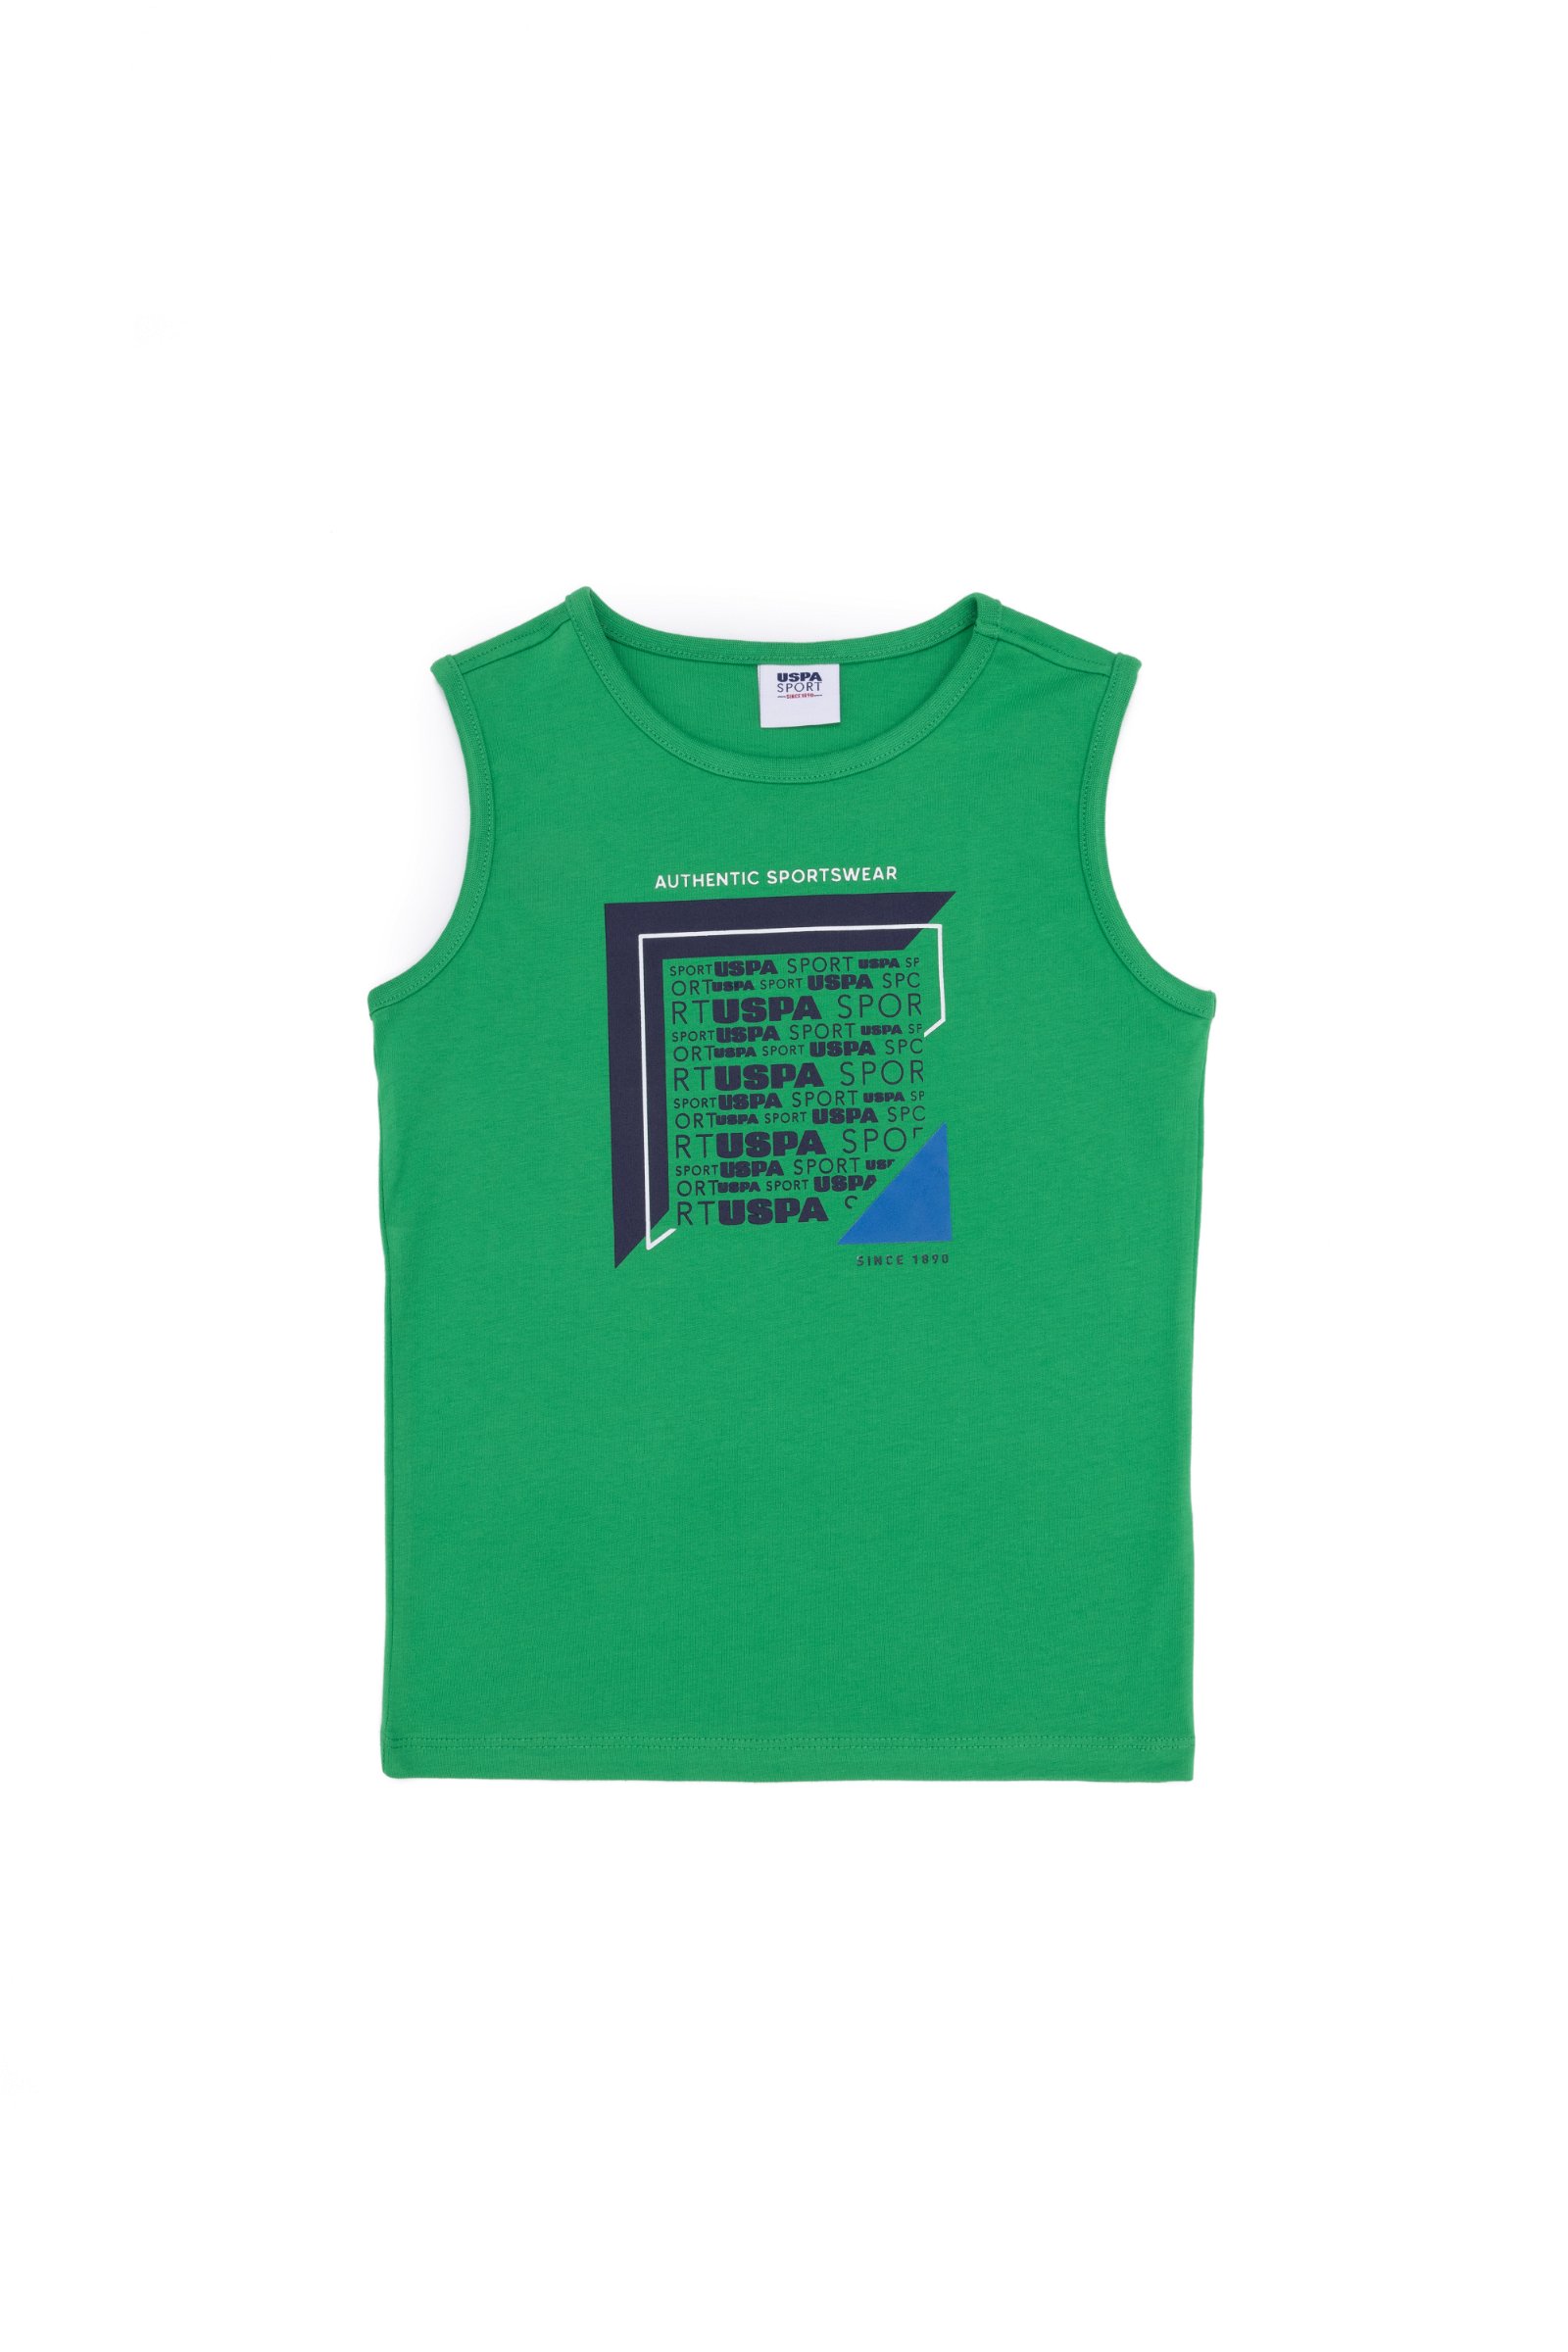 تی شرت یقه گرد سبز  استاندارد فیت  پسرانه یو اس پولو | US POLO ASSN